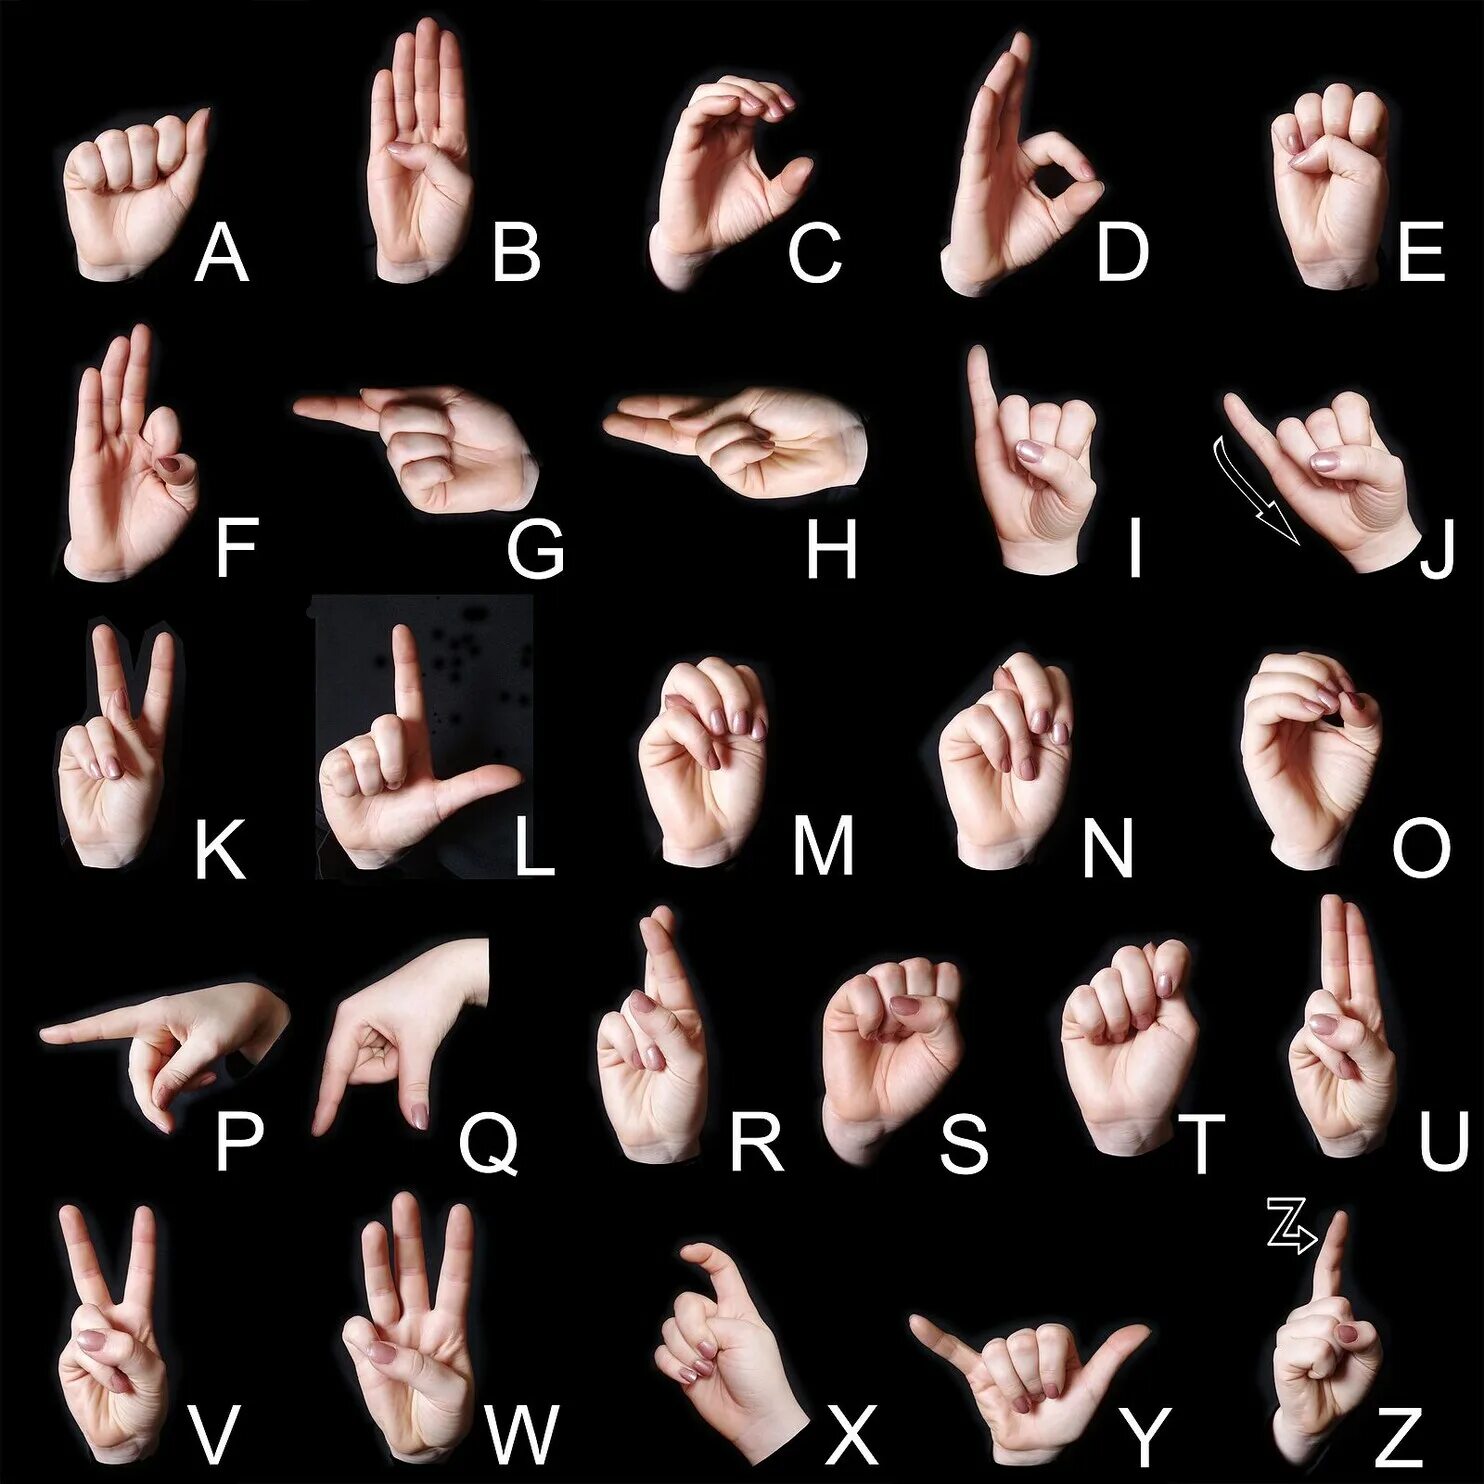 Дактильная Азбука глухих жесты. Алфавит английский жестовый язык. Английский язык жестов глухонемых. Английский алфавит для глухих. Буквы глухонемых